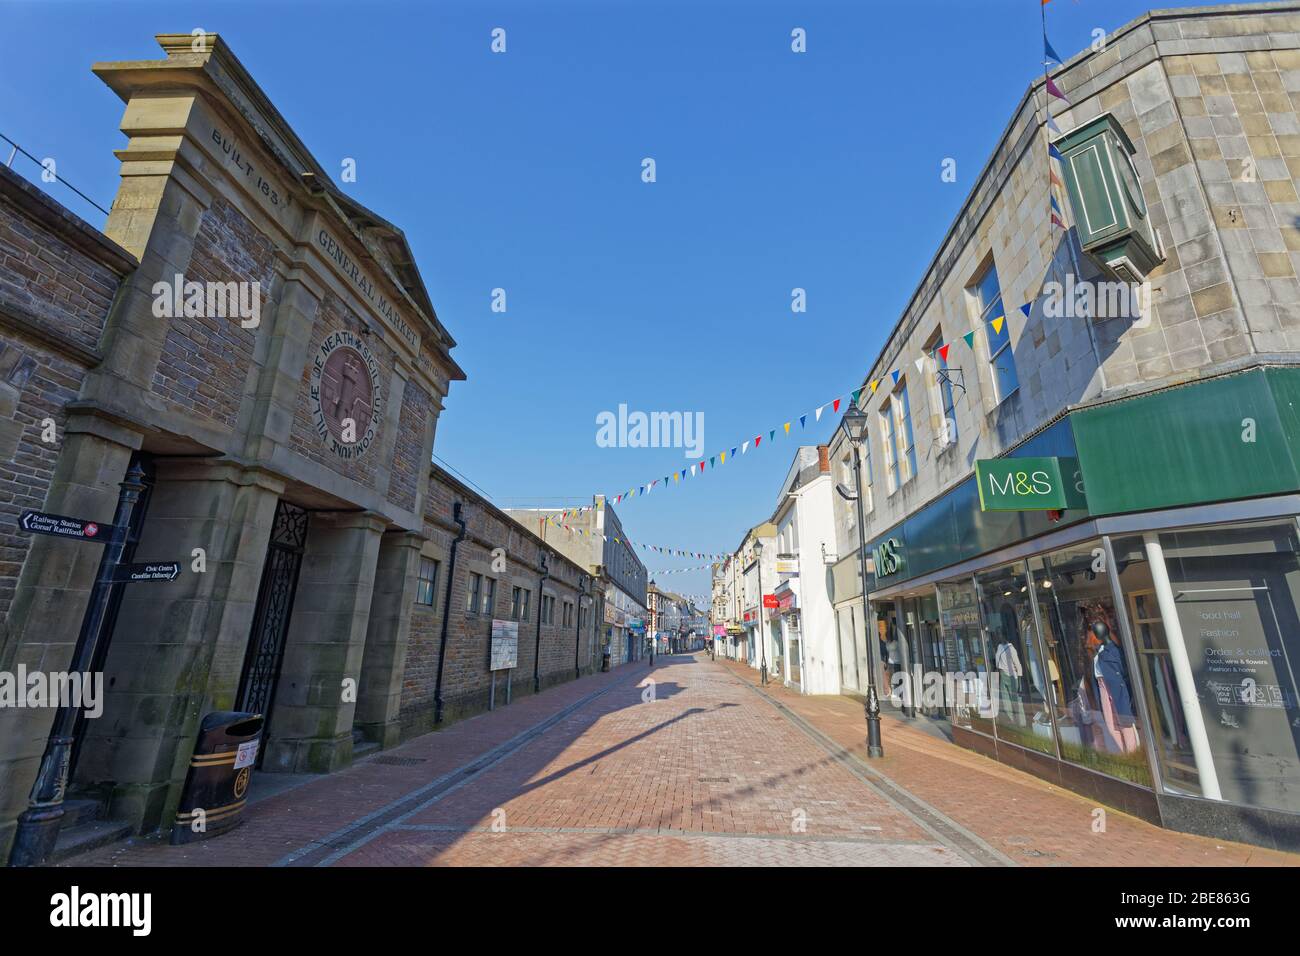 Im Bild: Die verlassene Green Street im Stadtzentrum von Neath, Wales, Großbritannien. Freitag 27 März 2020 Re: Covid-19 Coronavirus Pandemie, UK. Stockfoto